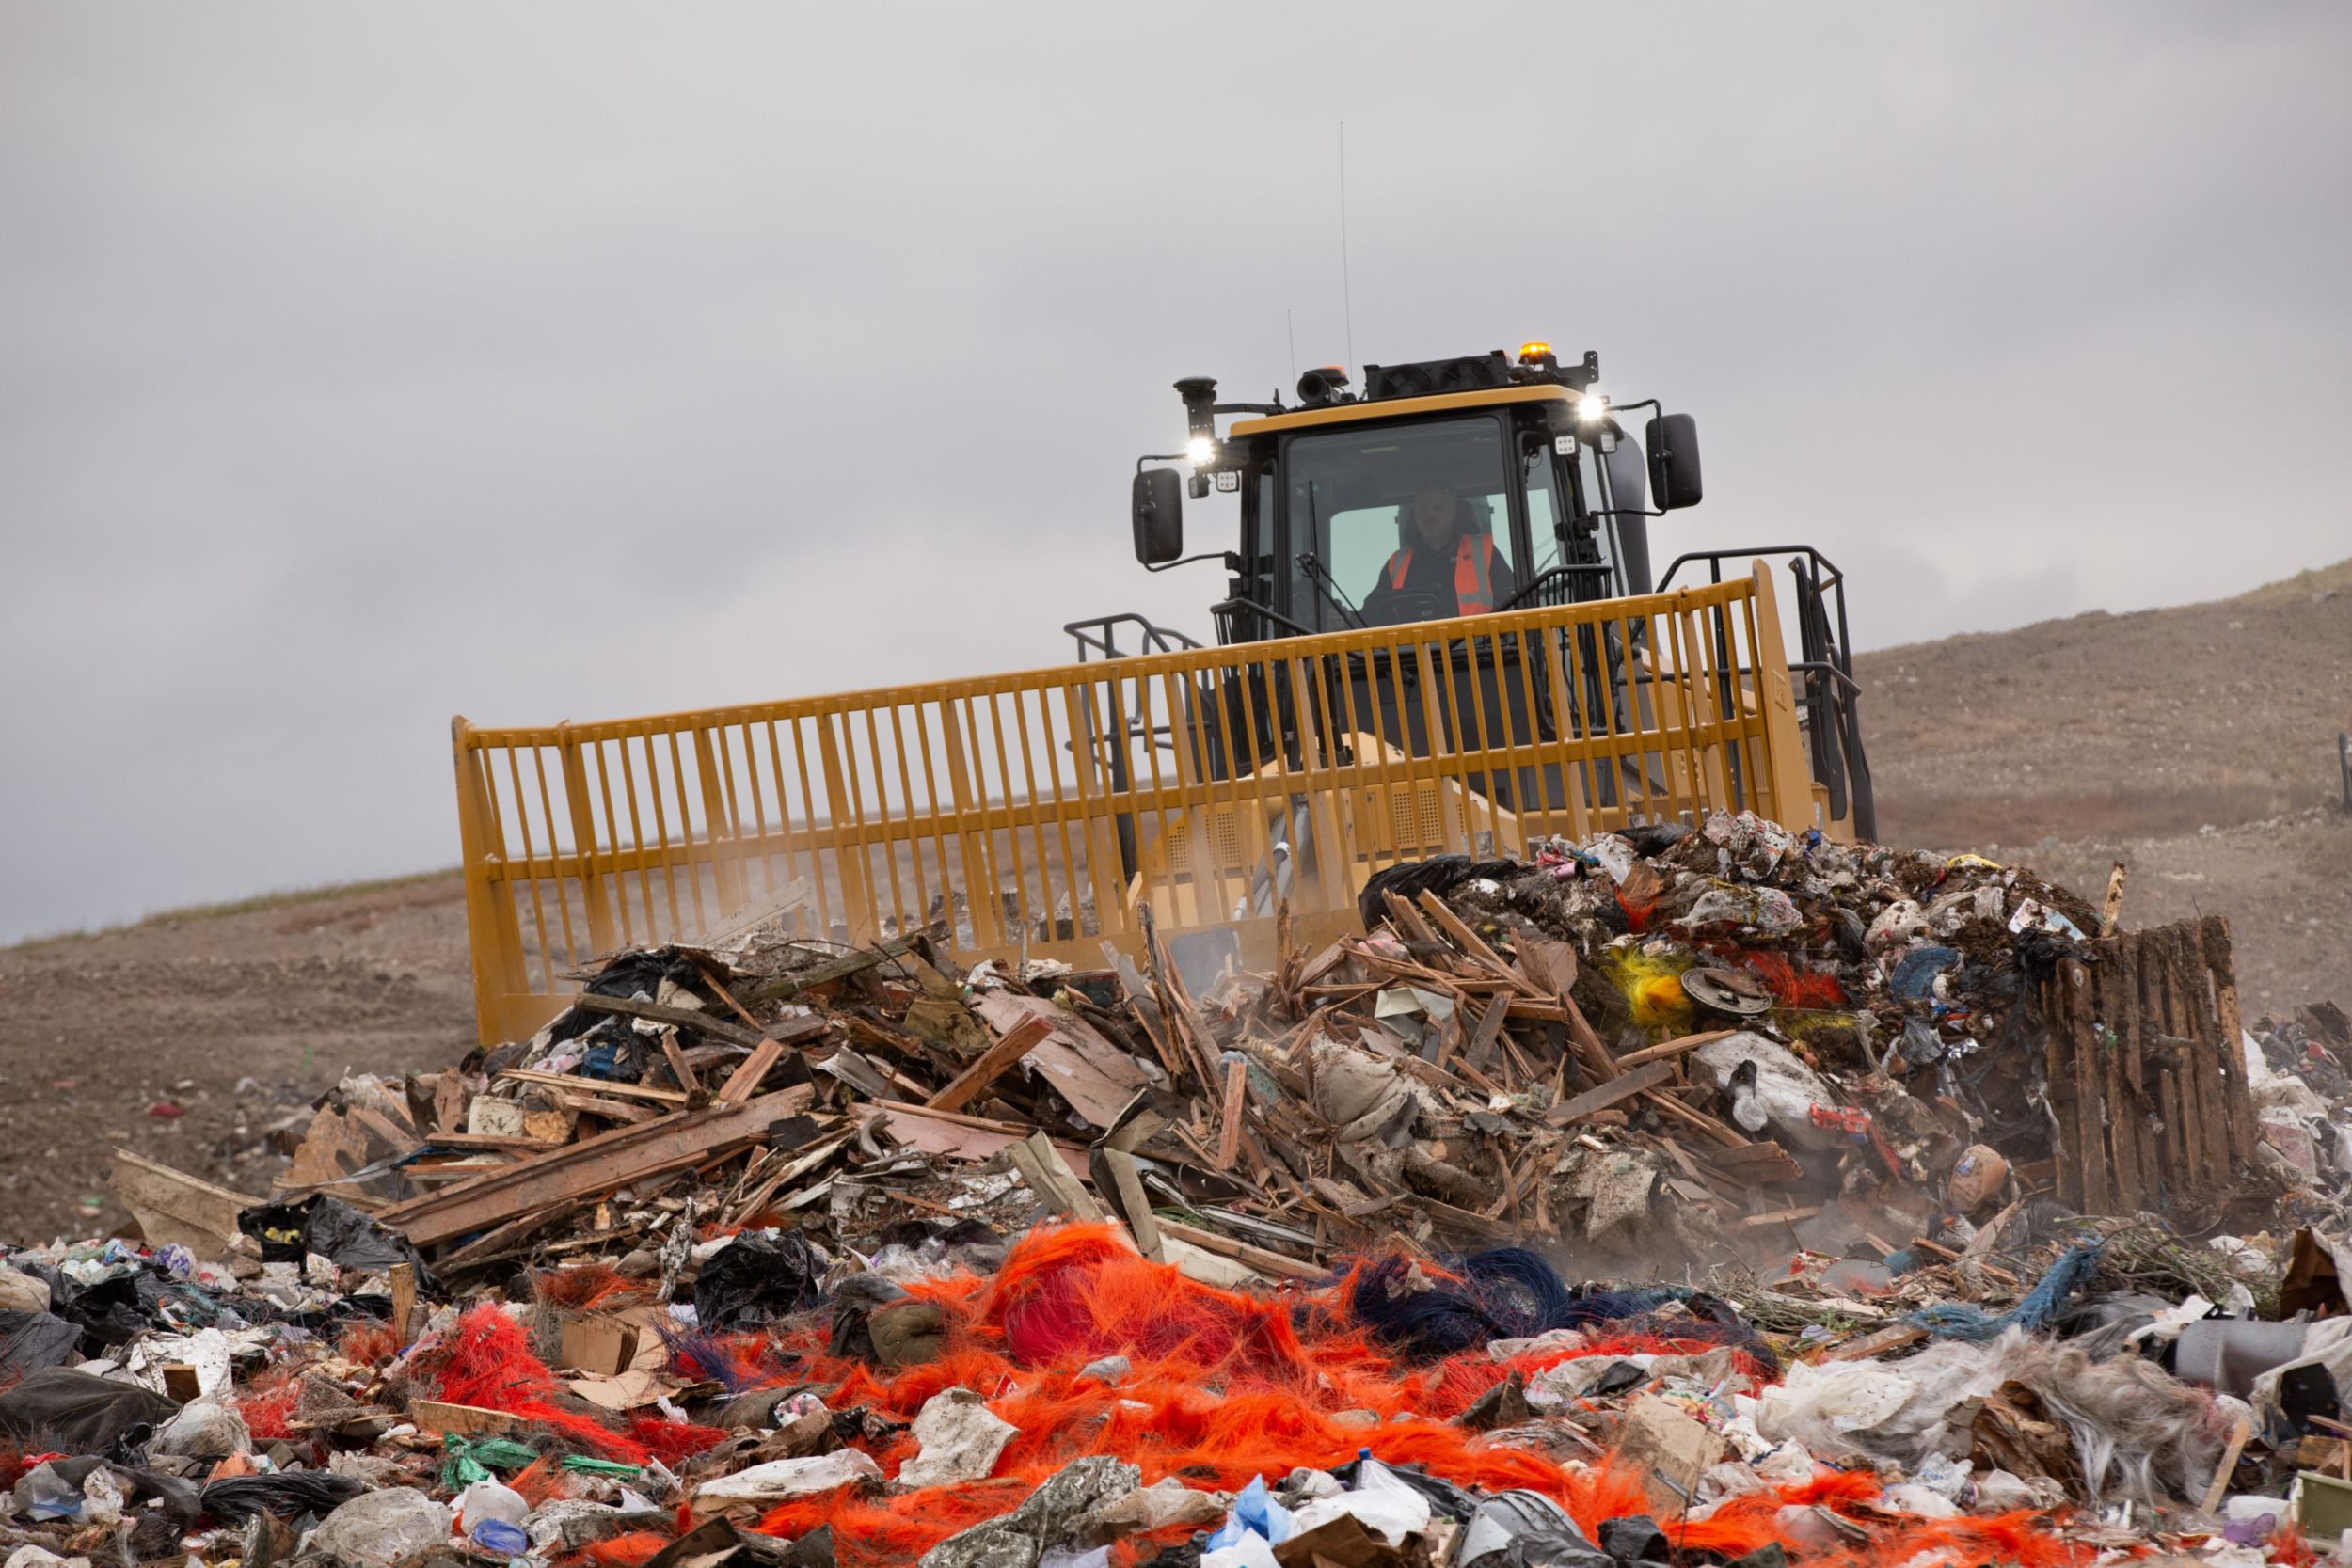 836 Landfill Compactors>